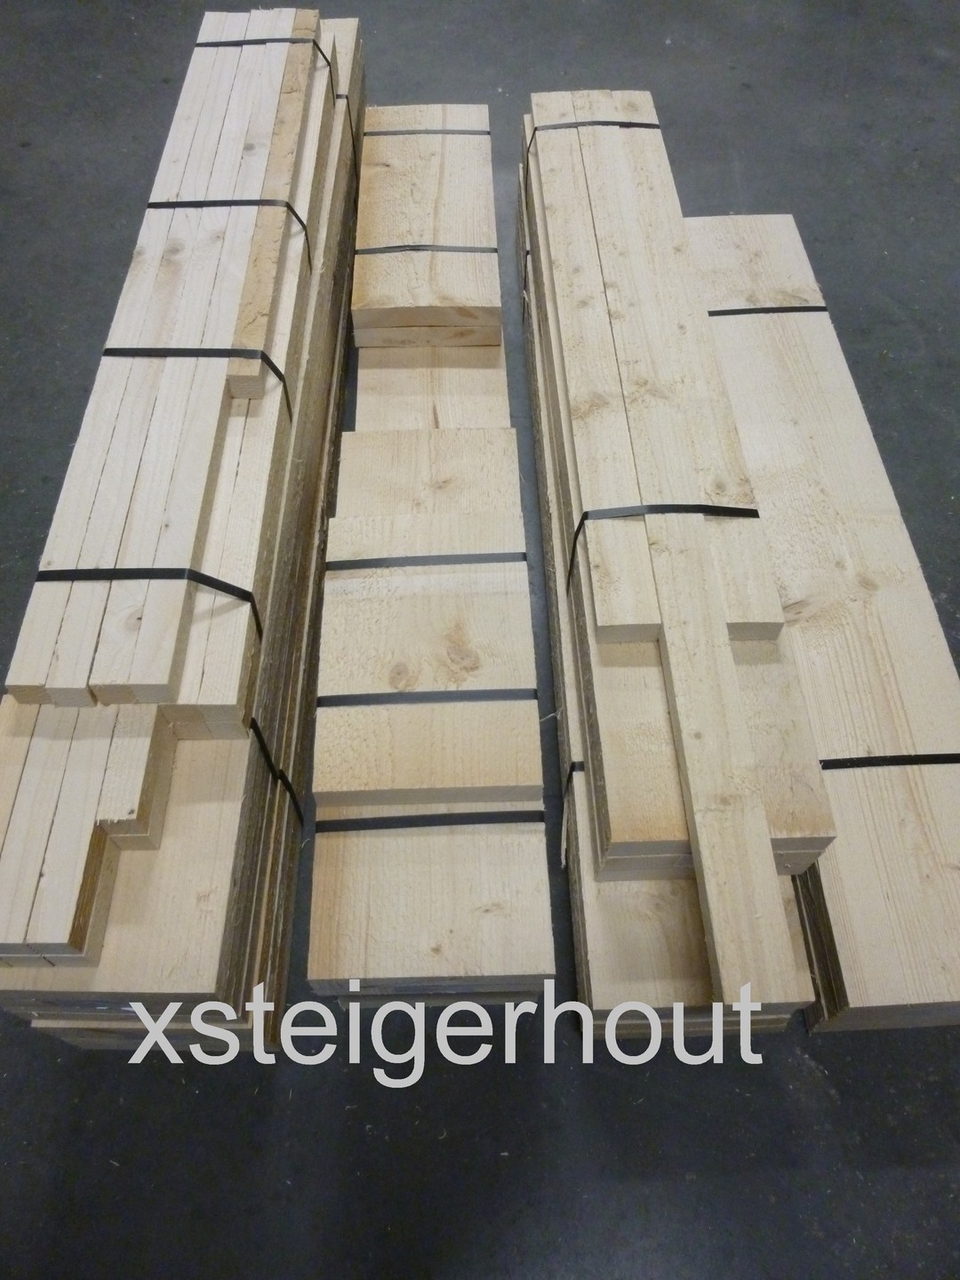 Speelhuisje steigerhout - xsteigerhout